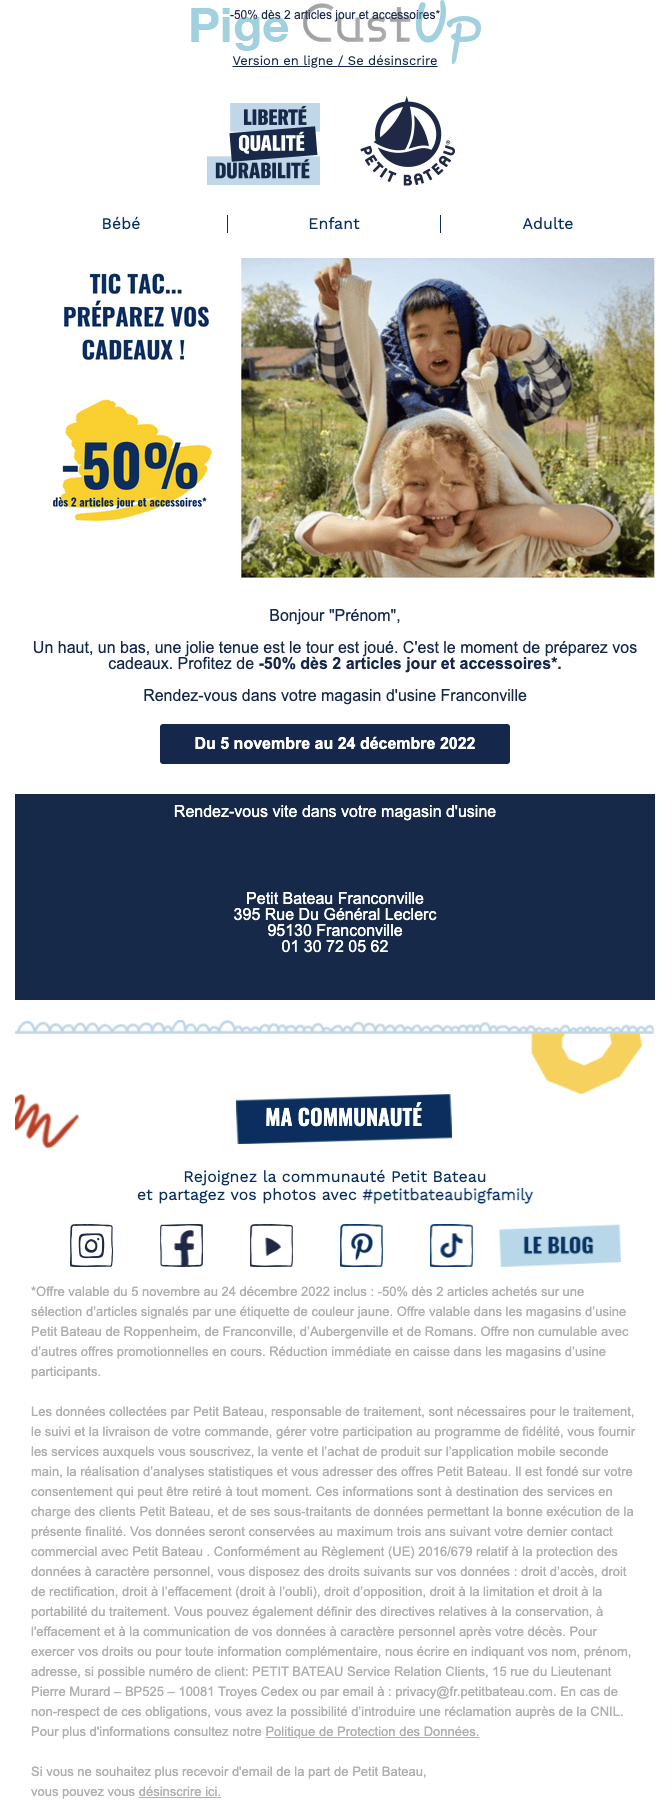 Exemple de Type de media  e-mailing - Petit Bateau - Marketing relationnel - Calendaire (Noël, St valentin, Vœux, …) - Marketing Acquisition - Ventes flash, soldes, demarque, promo, réduction